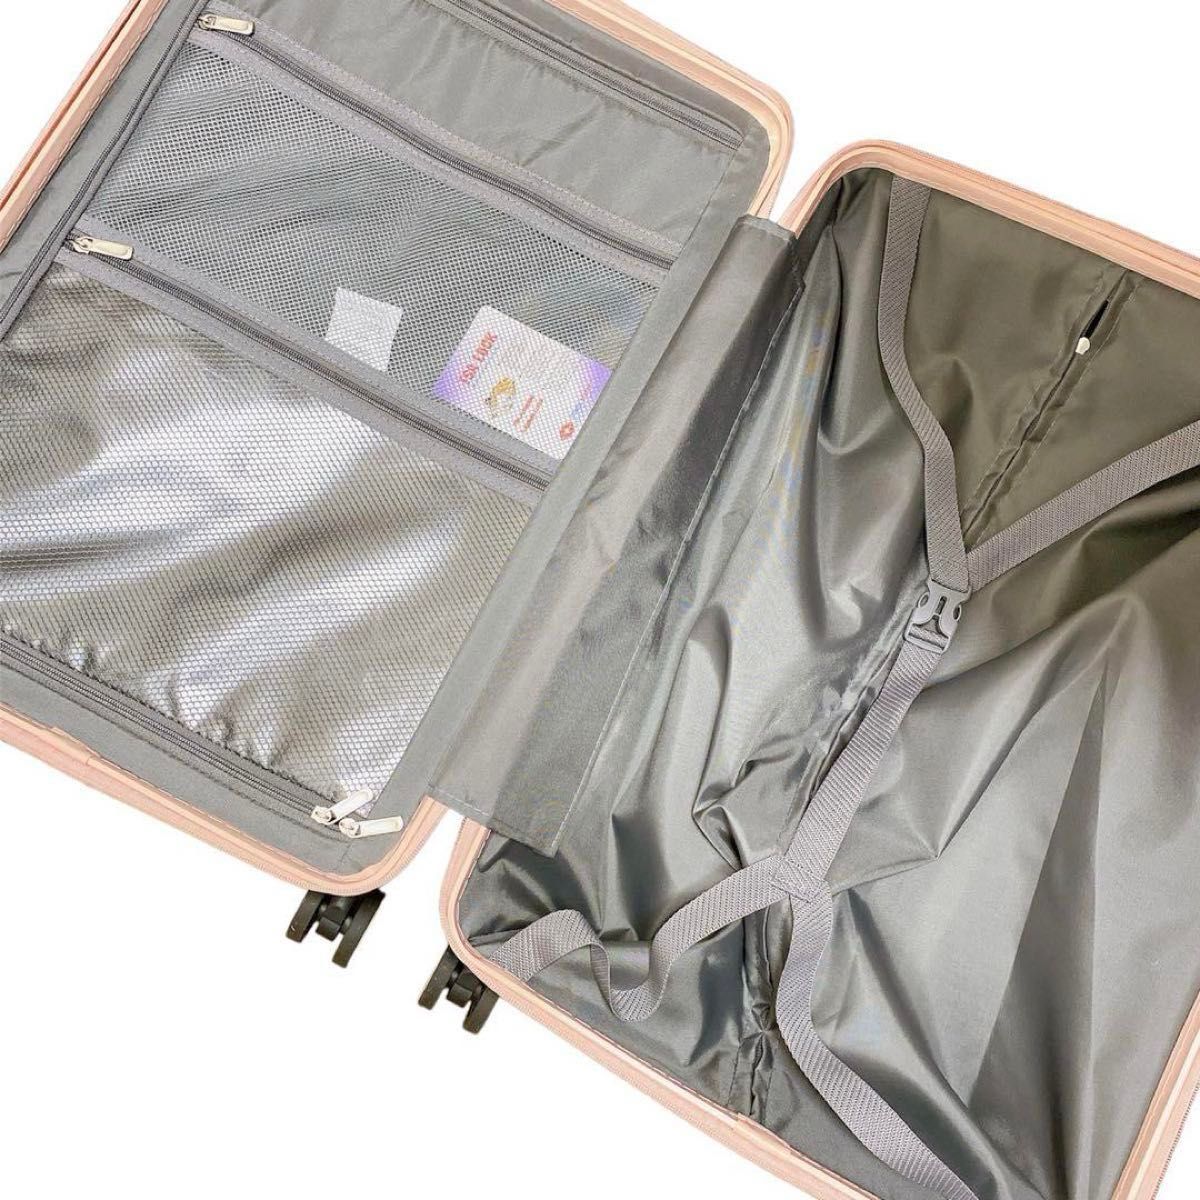 【新品未使用】キャリーケース スーツケース M 大容量 ピンク 可愛い 人気 旅行 出張 軽量 TSAロック